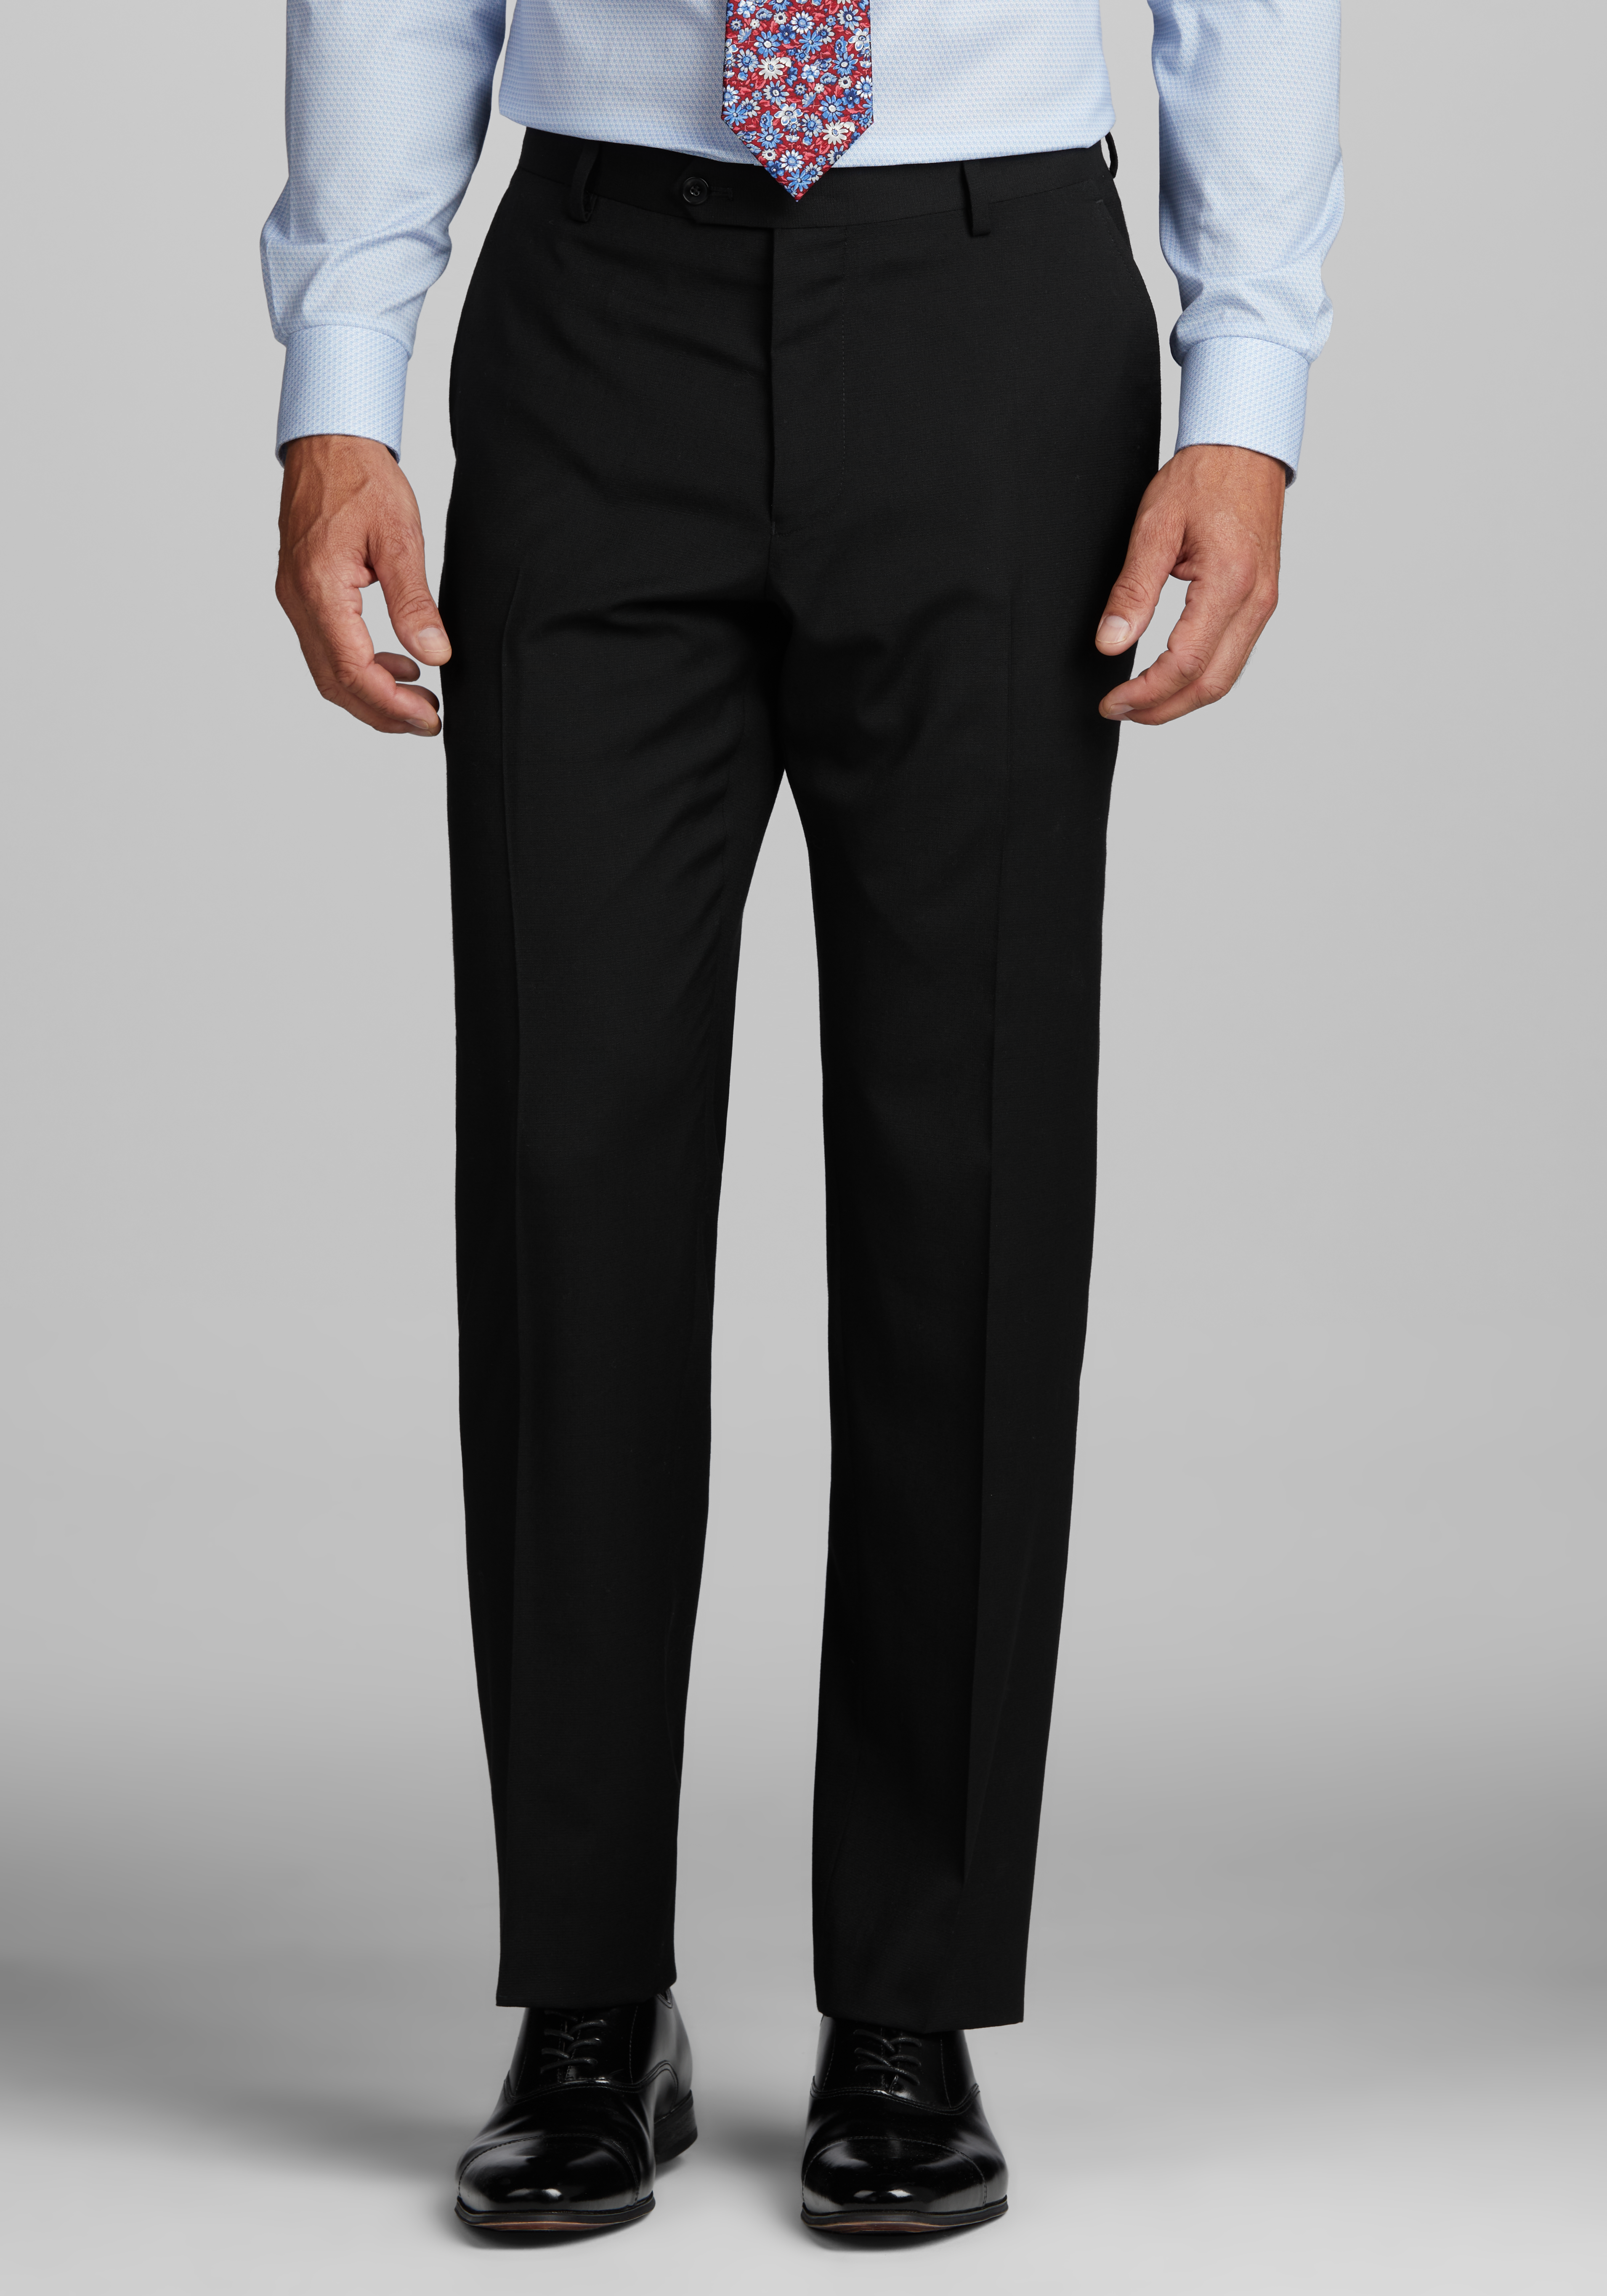 DTI Men's Suit Classic Fit Dress Pants Separates Slacks Pleated Trouser  Black (30W x 32L, Black) at  Men's Clothing store: Business Suit Pants  Separates